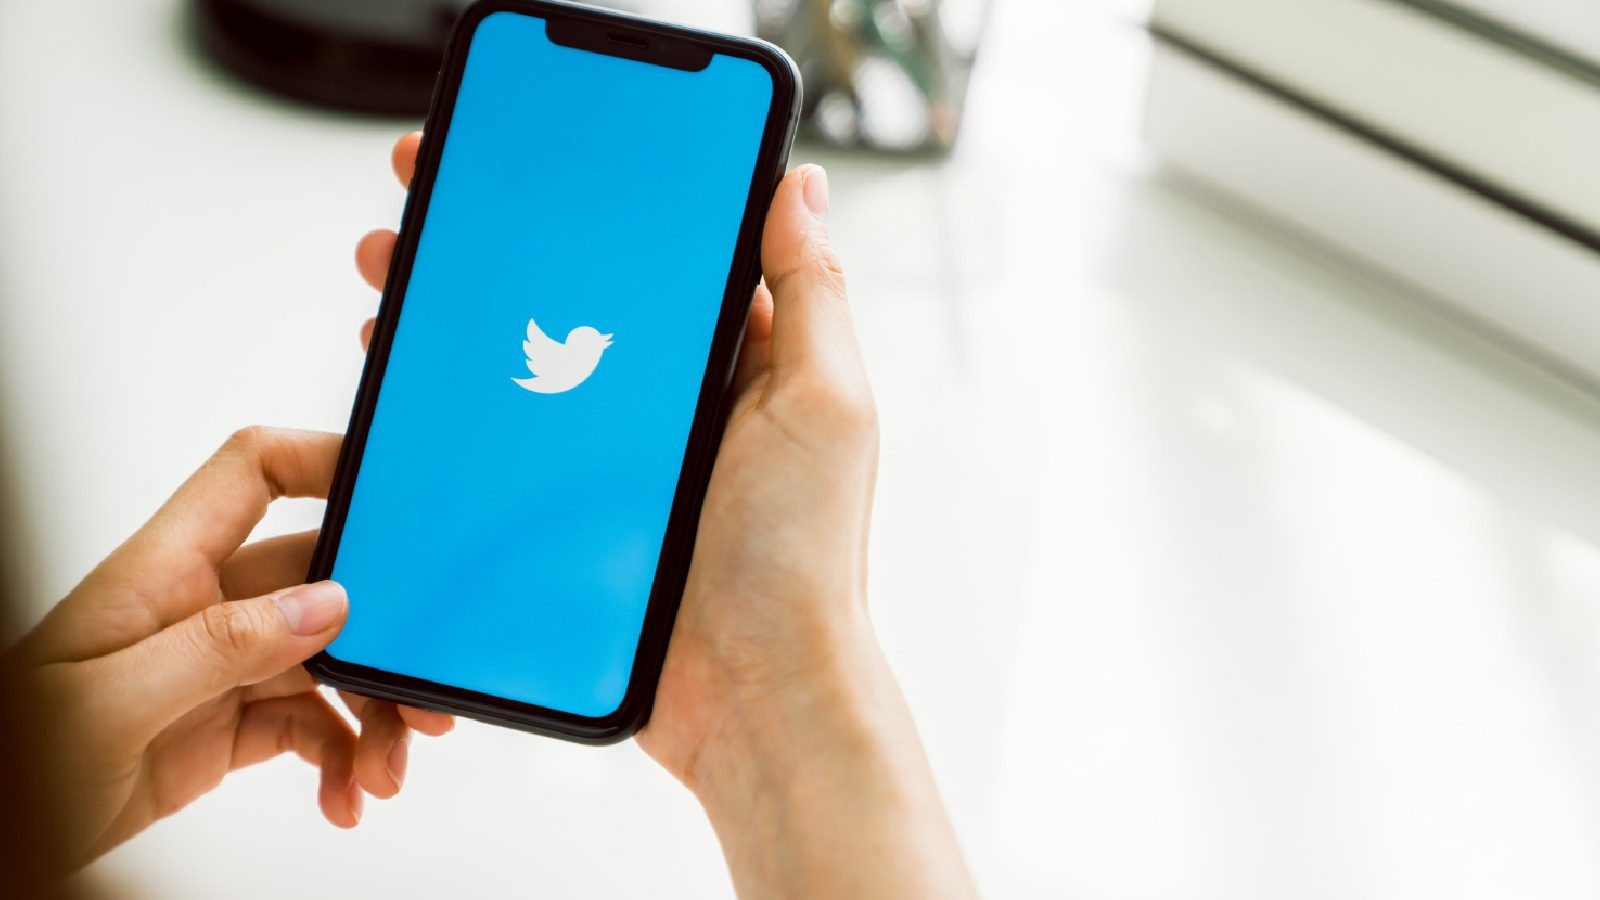 Twitter удваивает свою технологическую команду в Индии, чтобы создавать продукты для всего мира